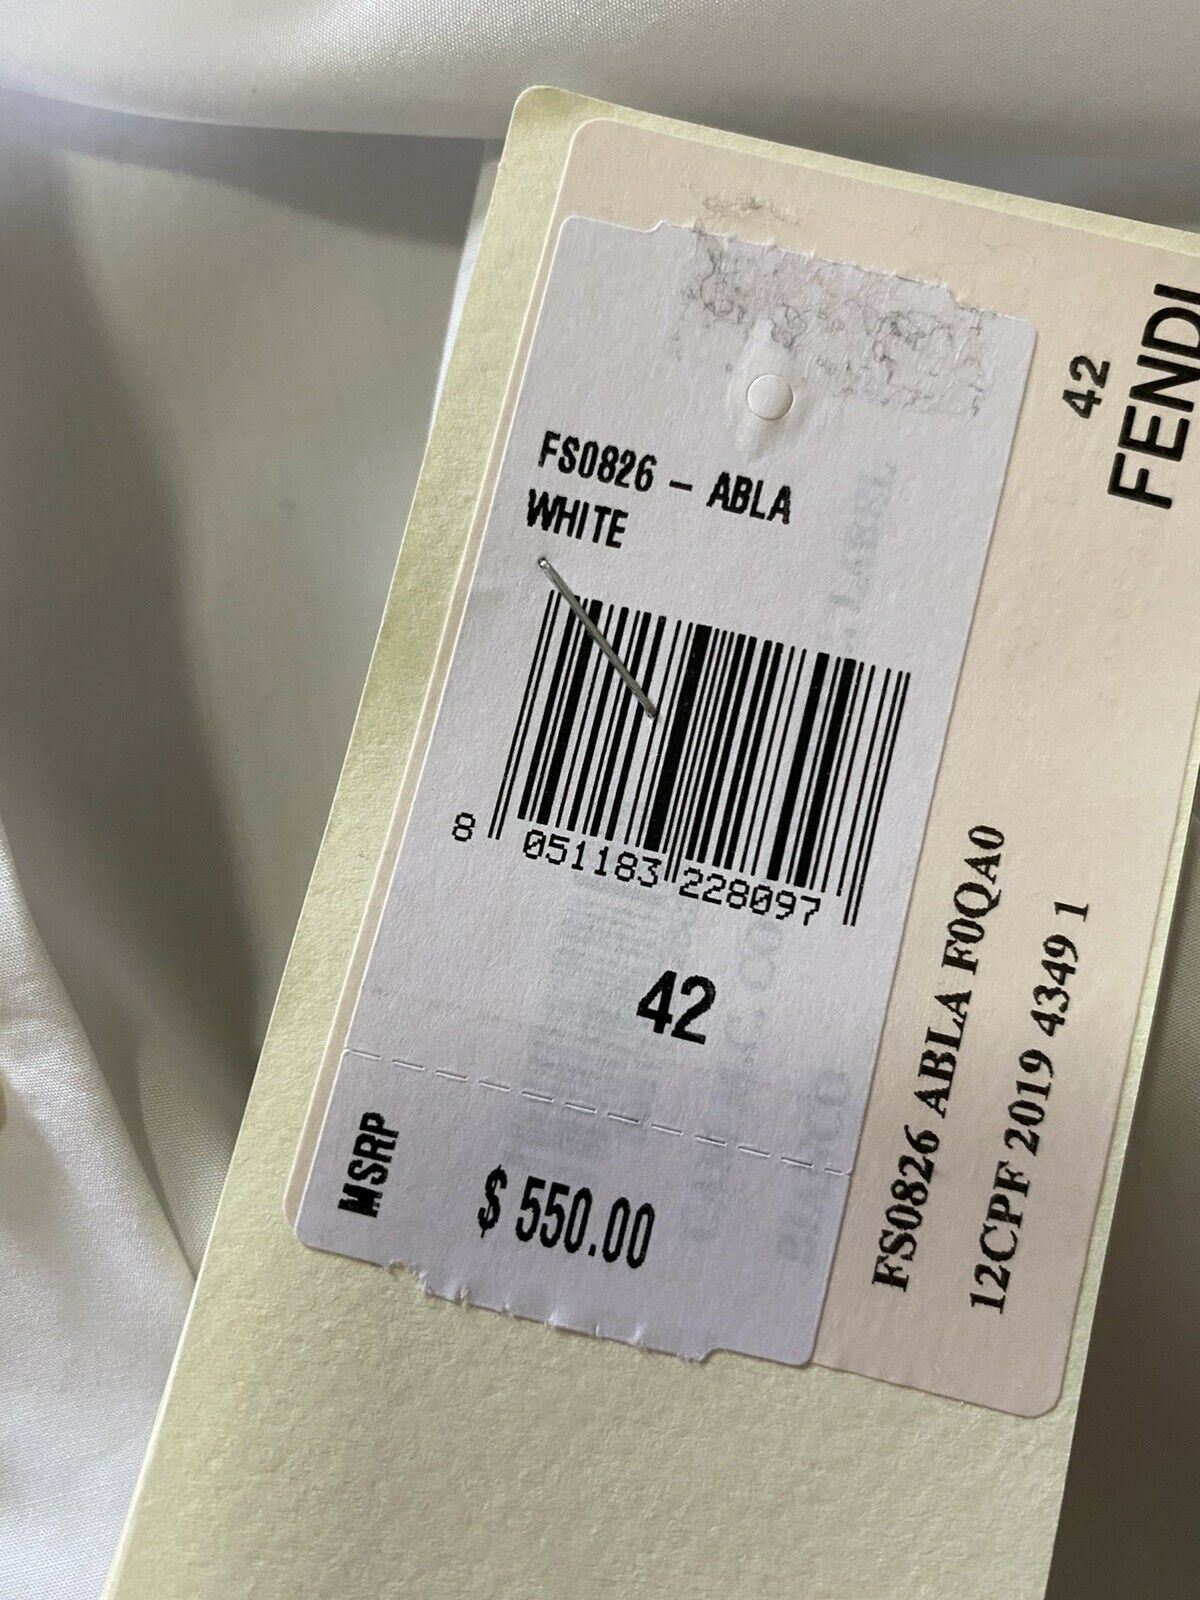 New $550 Fendi Men Solid Hidden-Button Point Collar Shirt White XL ( 42 Eu )